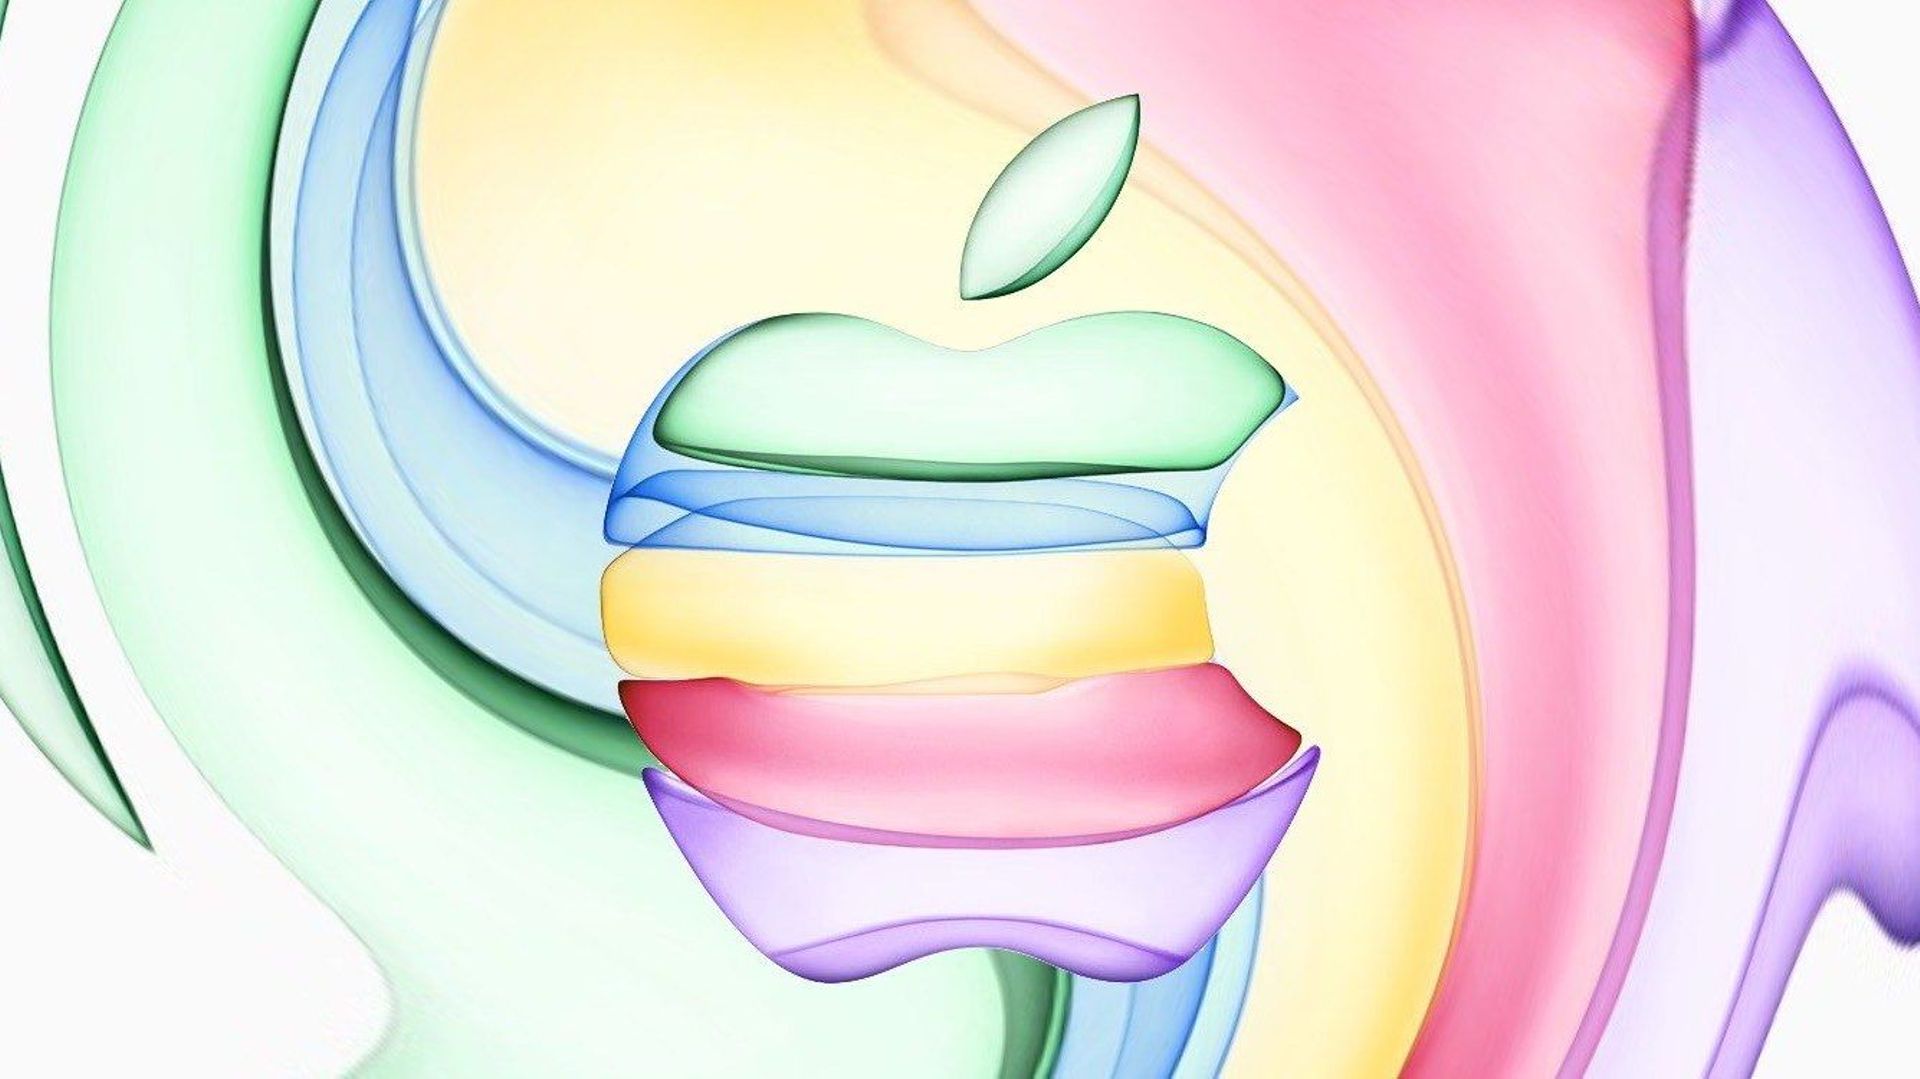 La prochaine Keynote d'Apple aura lieu le 10 septembre